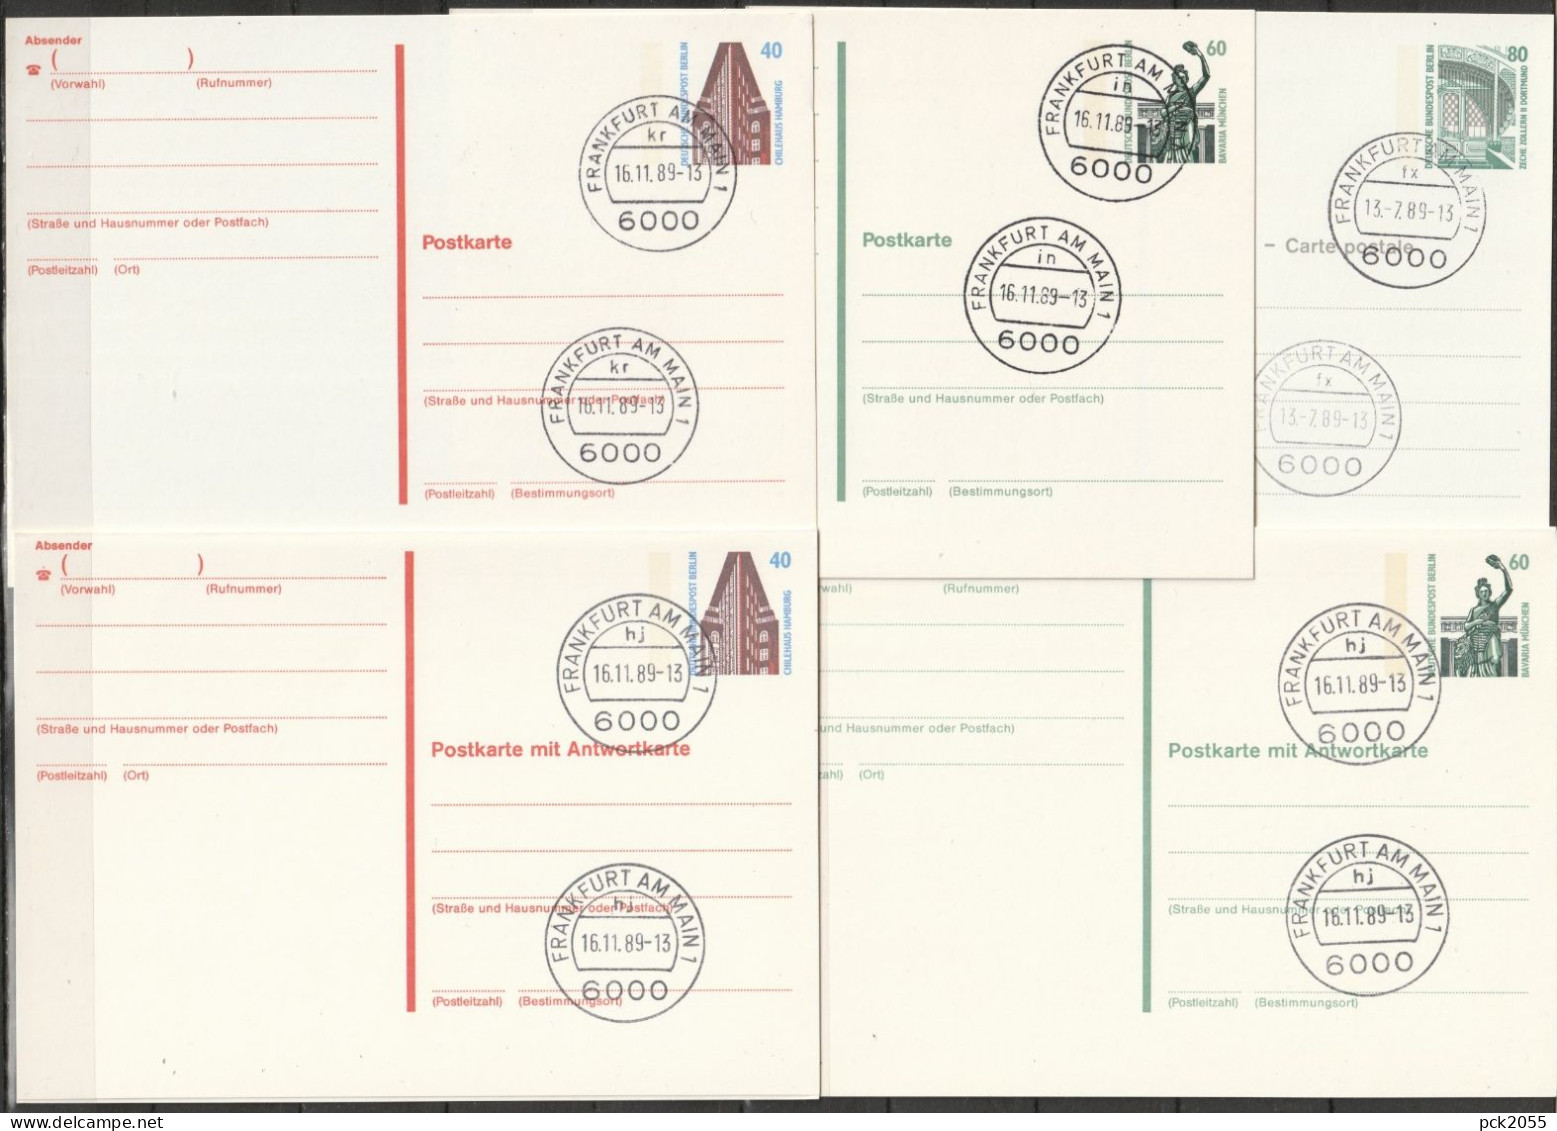 Berlin Ganzsache 1988 Mi.-Nr. P129 - P133  Tagesstempel FRANKFURT  13.7.89- 16.11.89  ( PK 486 ) - Postkaarten - Gebruikt